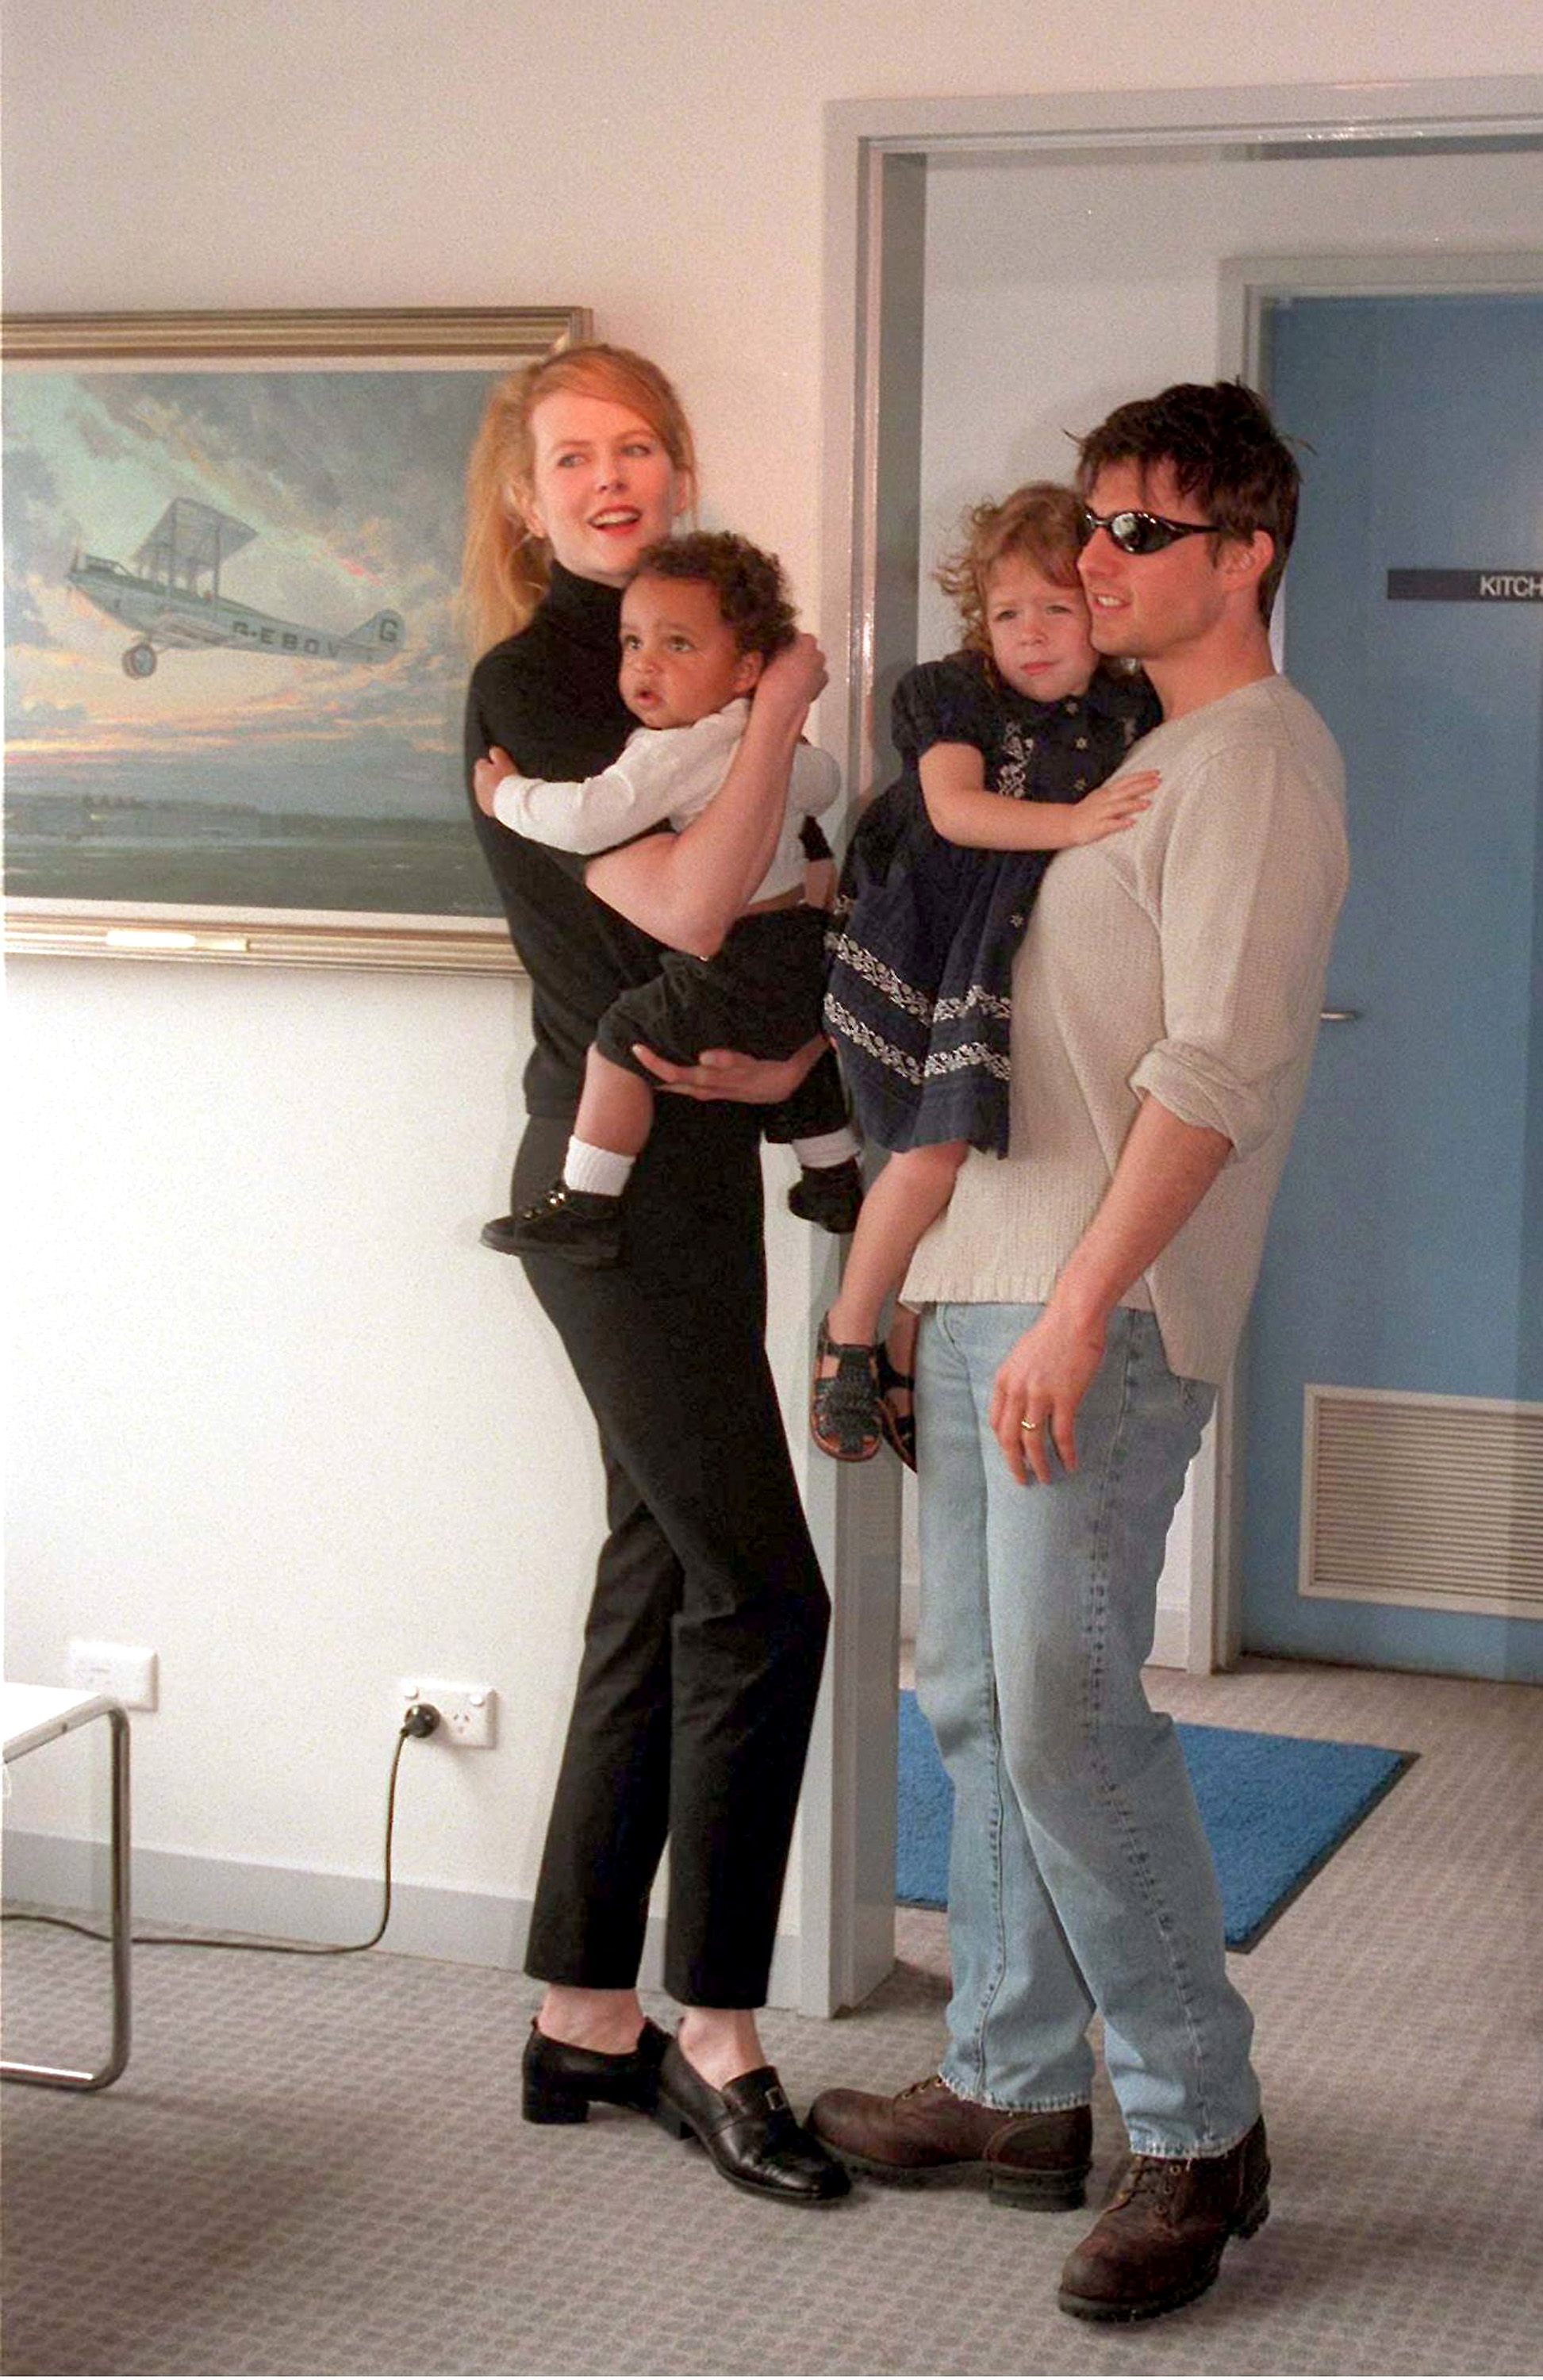 Nicole Kidman und Tom Cruise mit Isabella und Connor Cruise am Flughafen Sydney Kingsford Smith und stellen den Medien ihre Kinder Connor und Isabella vor 24. Januar 1996 | Quelle: Getty Images